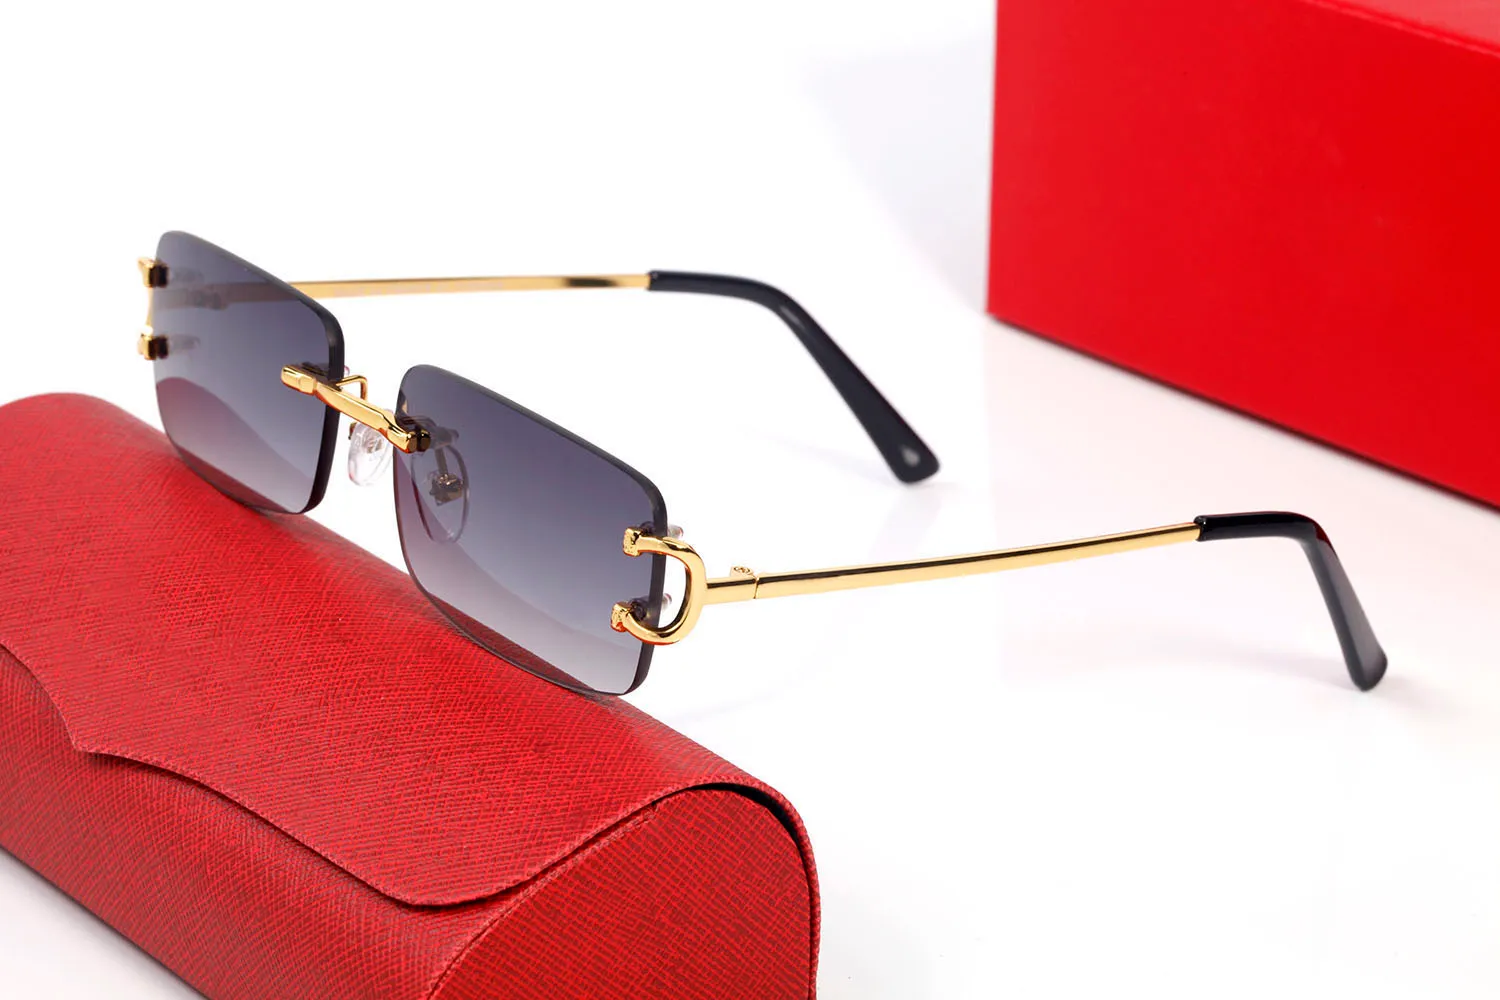 Vintage Optik Gözlükler Tasarımcı Güneş Gözlüğü Steampunk Büyük Kare Çerçeve Tarzı Şeffaf Mavi Kırmızı Kahverengi Siyah Lens Gözlük Com301s